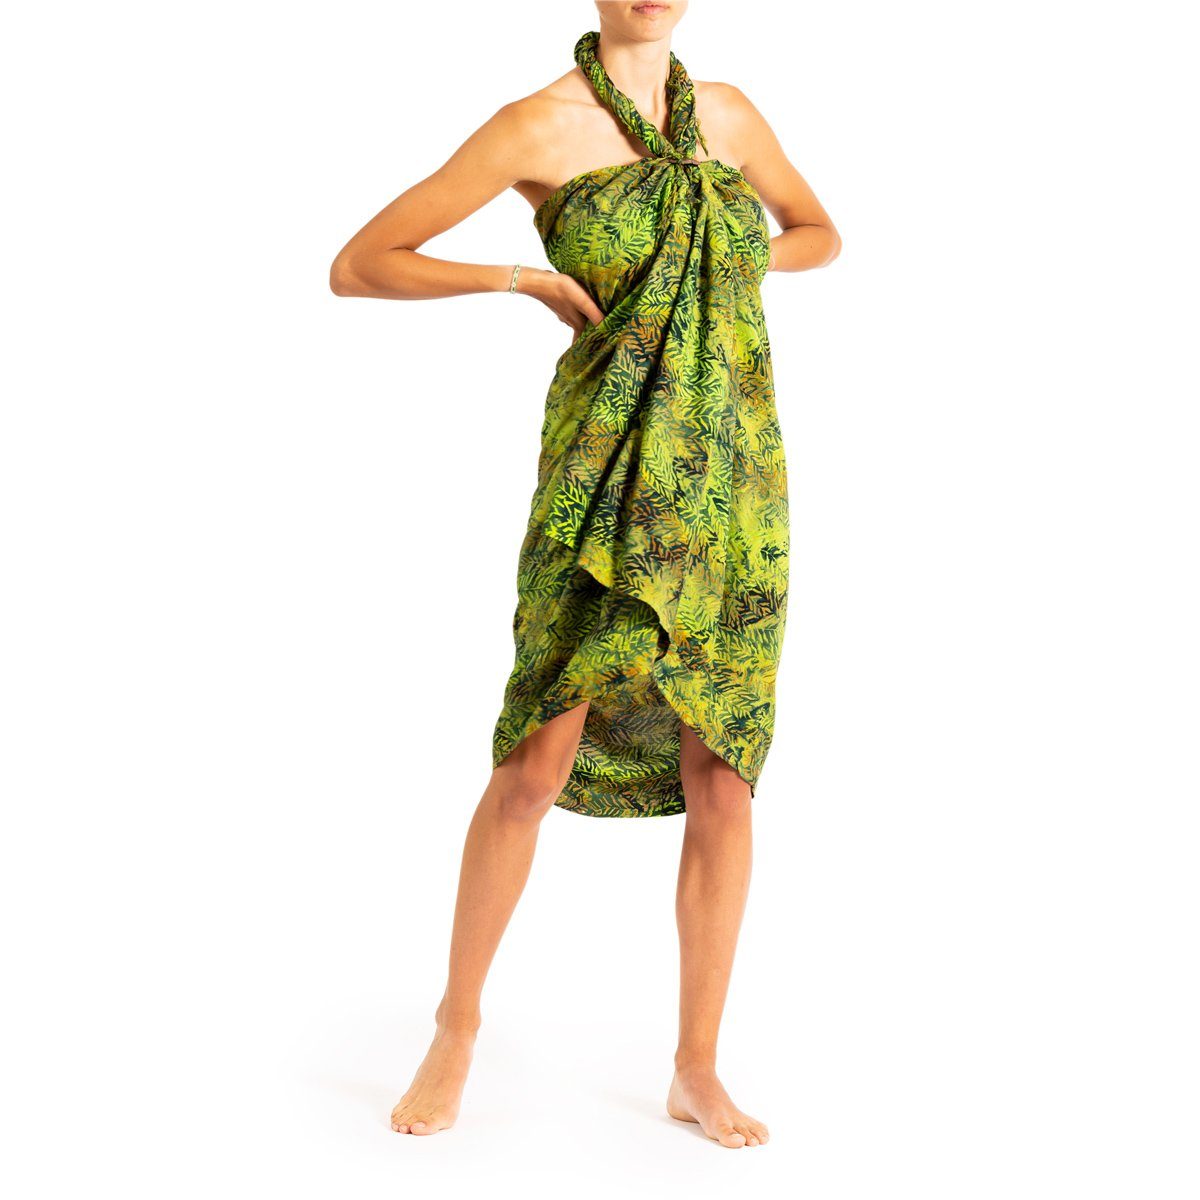 PANASIAM Pareo Sarong Wachsbatik Grüntöne aus hochwertiger Viskose Strandtuch, Strandkleid Bikini Cover-up Tuch für den Strand Schultertuch Halstuch B205 green fern